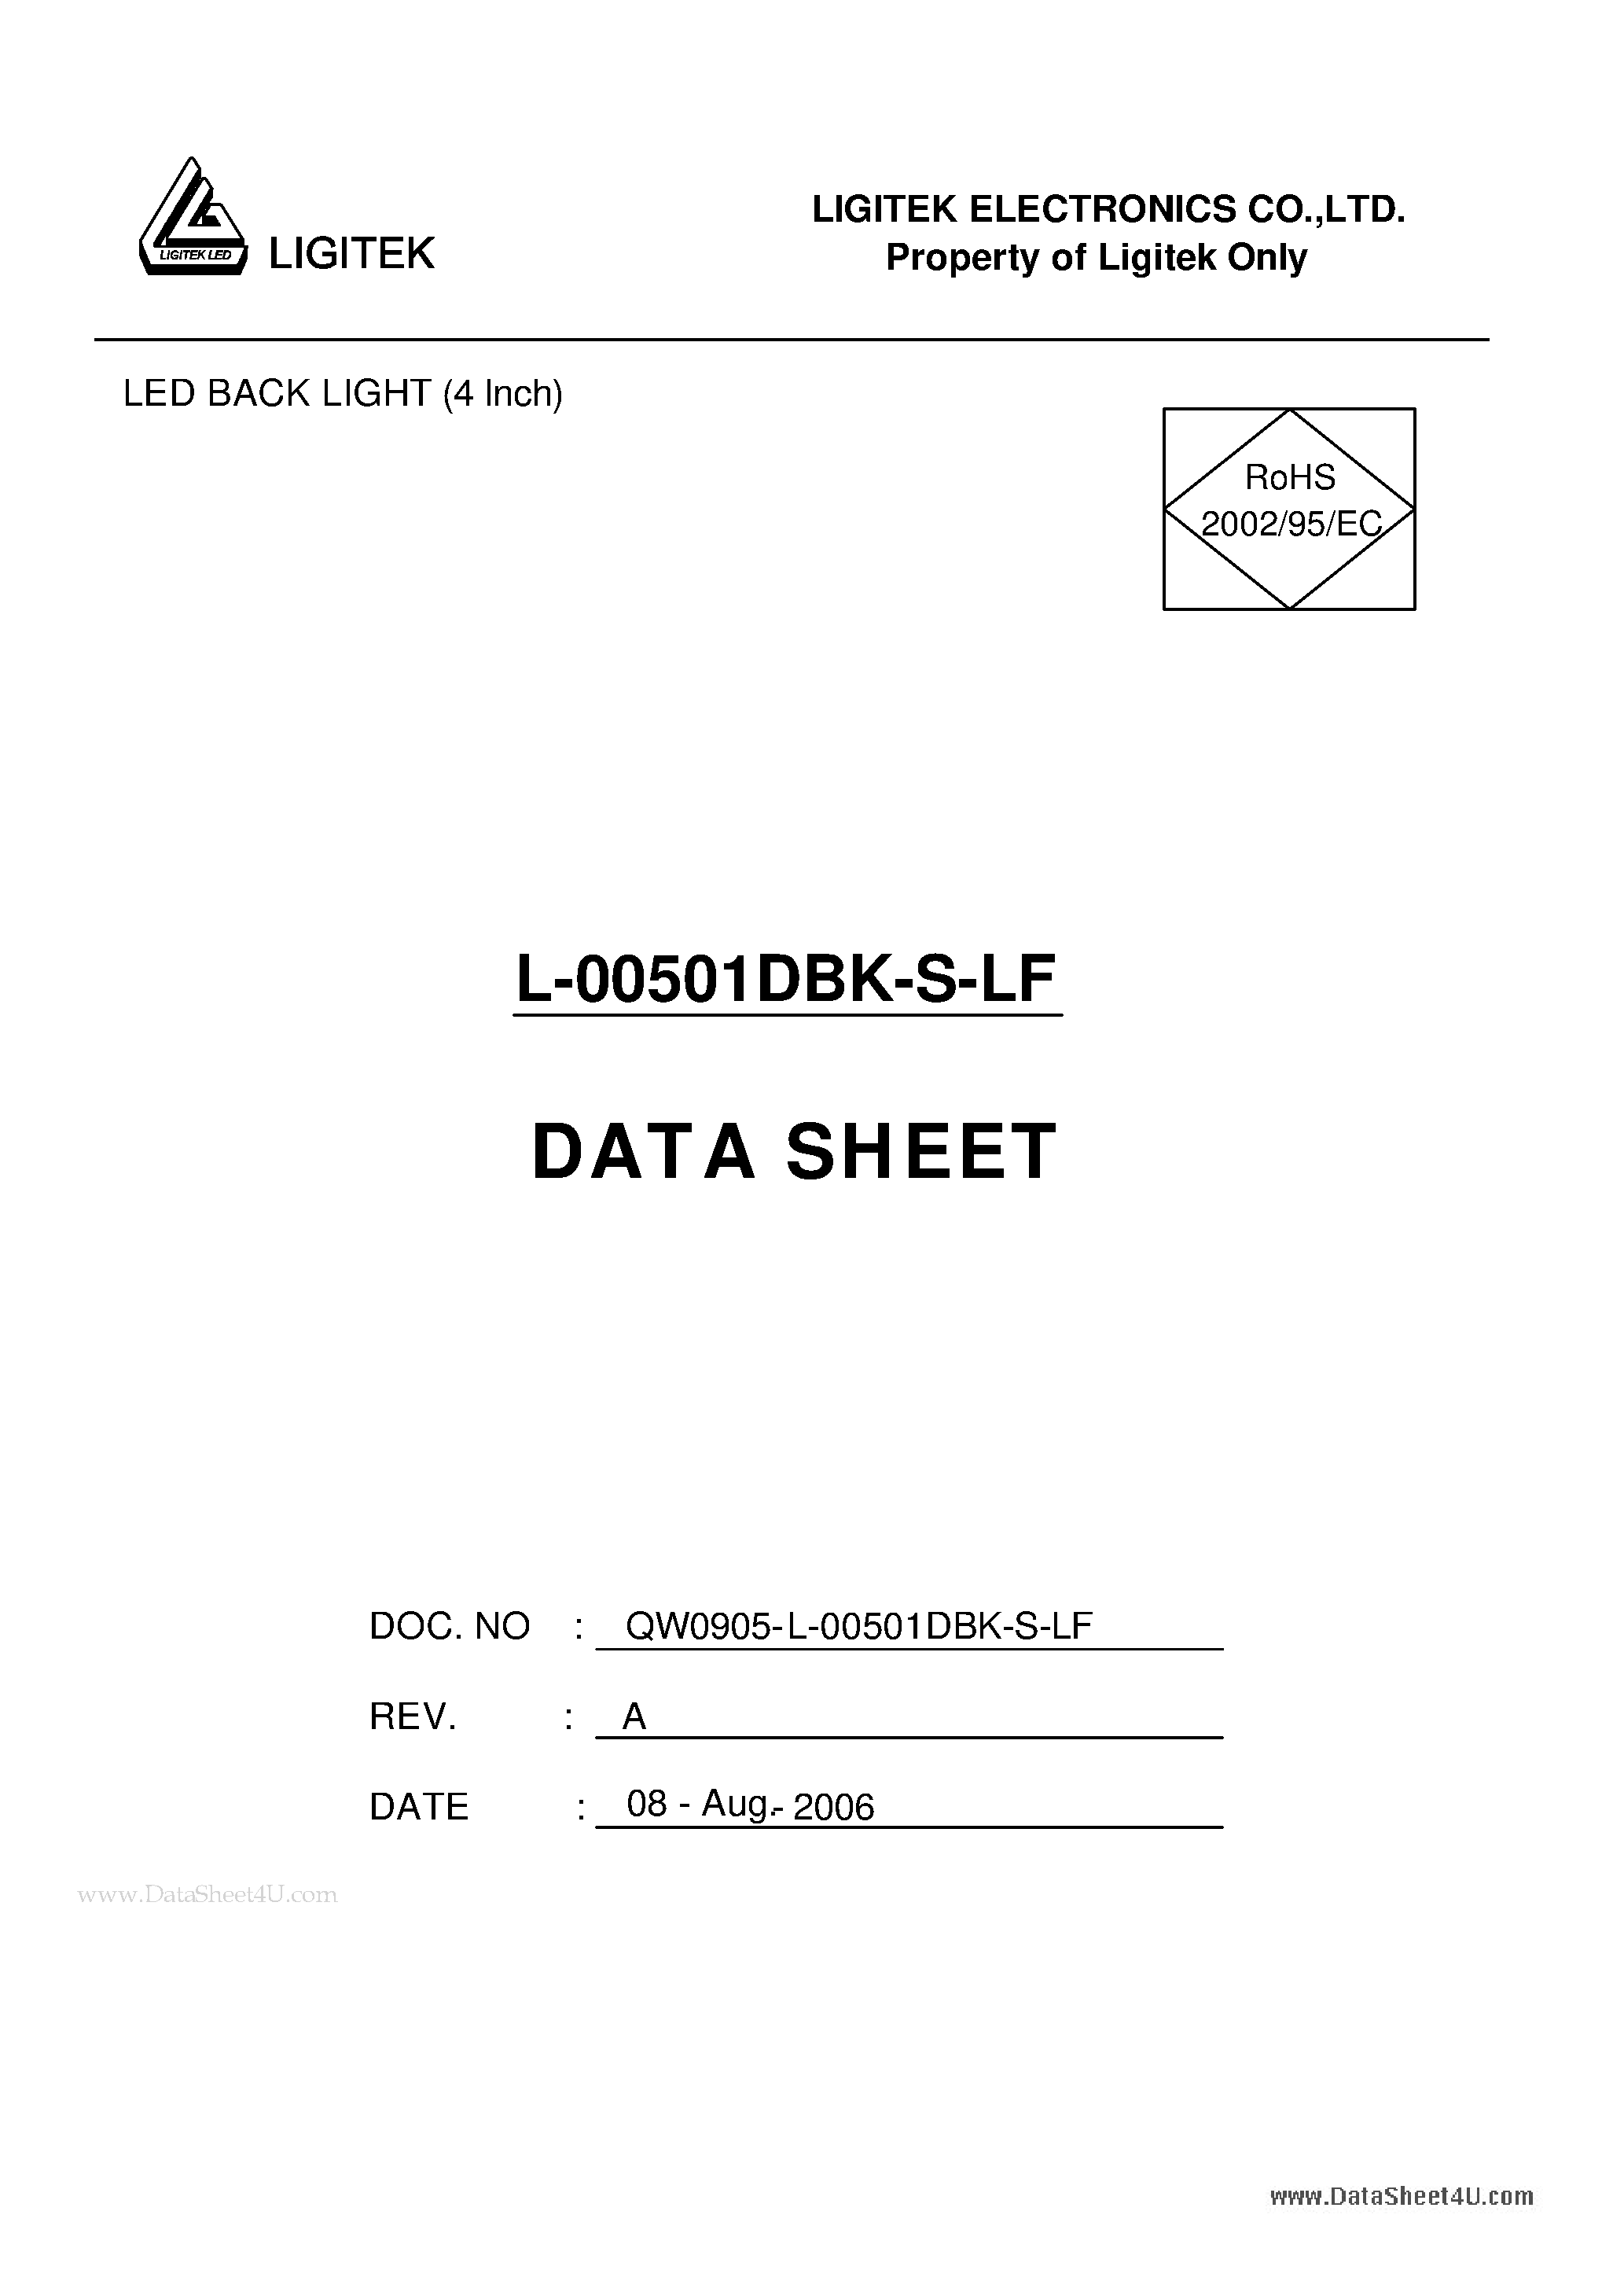 Datasheet L-00501DBK-S-LF - LED BACK LIGHT (4 Inch) page 1